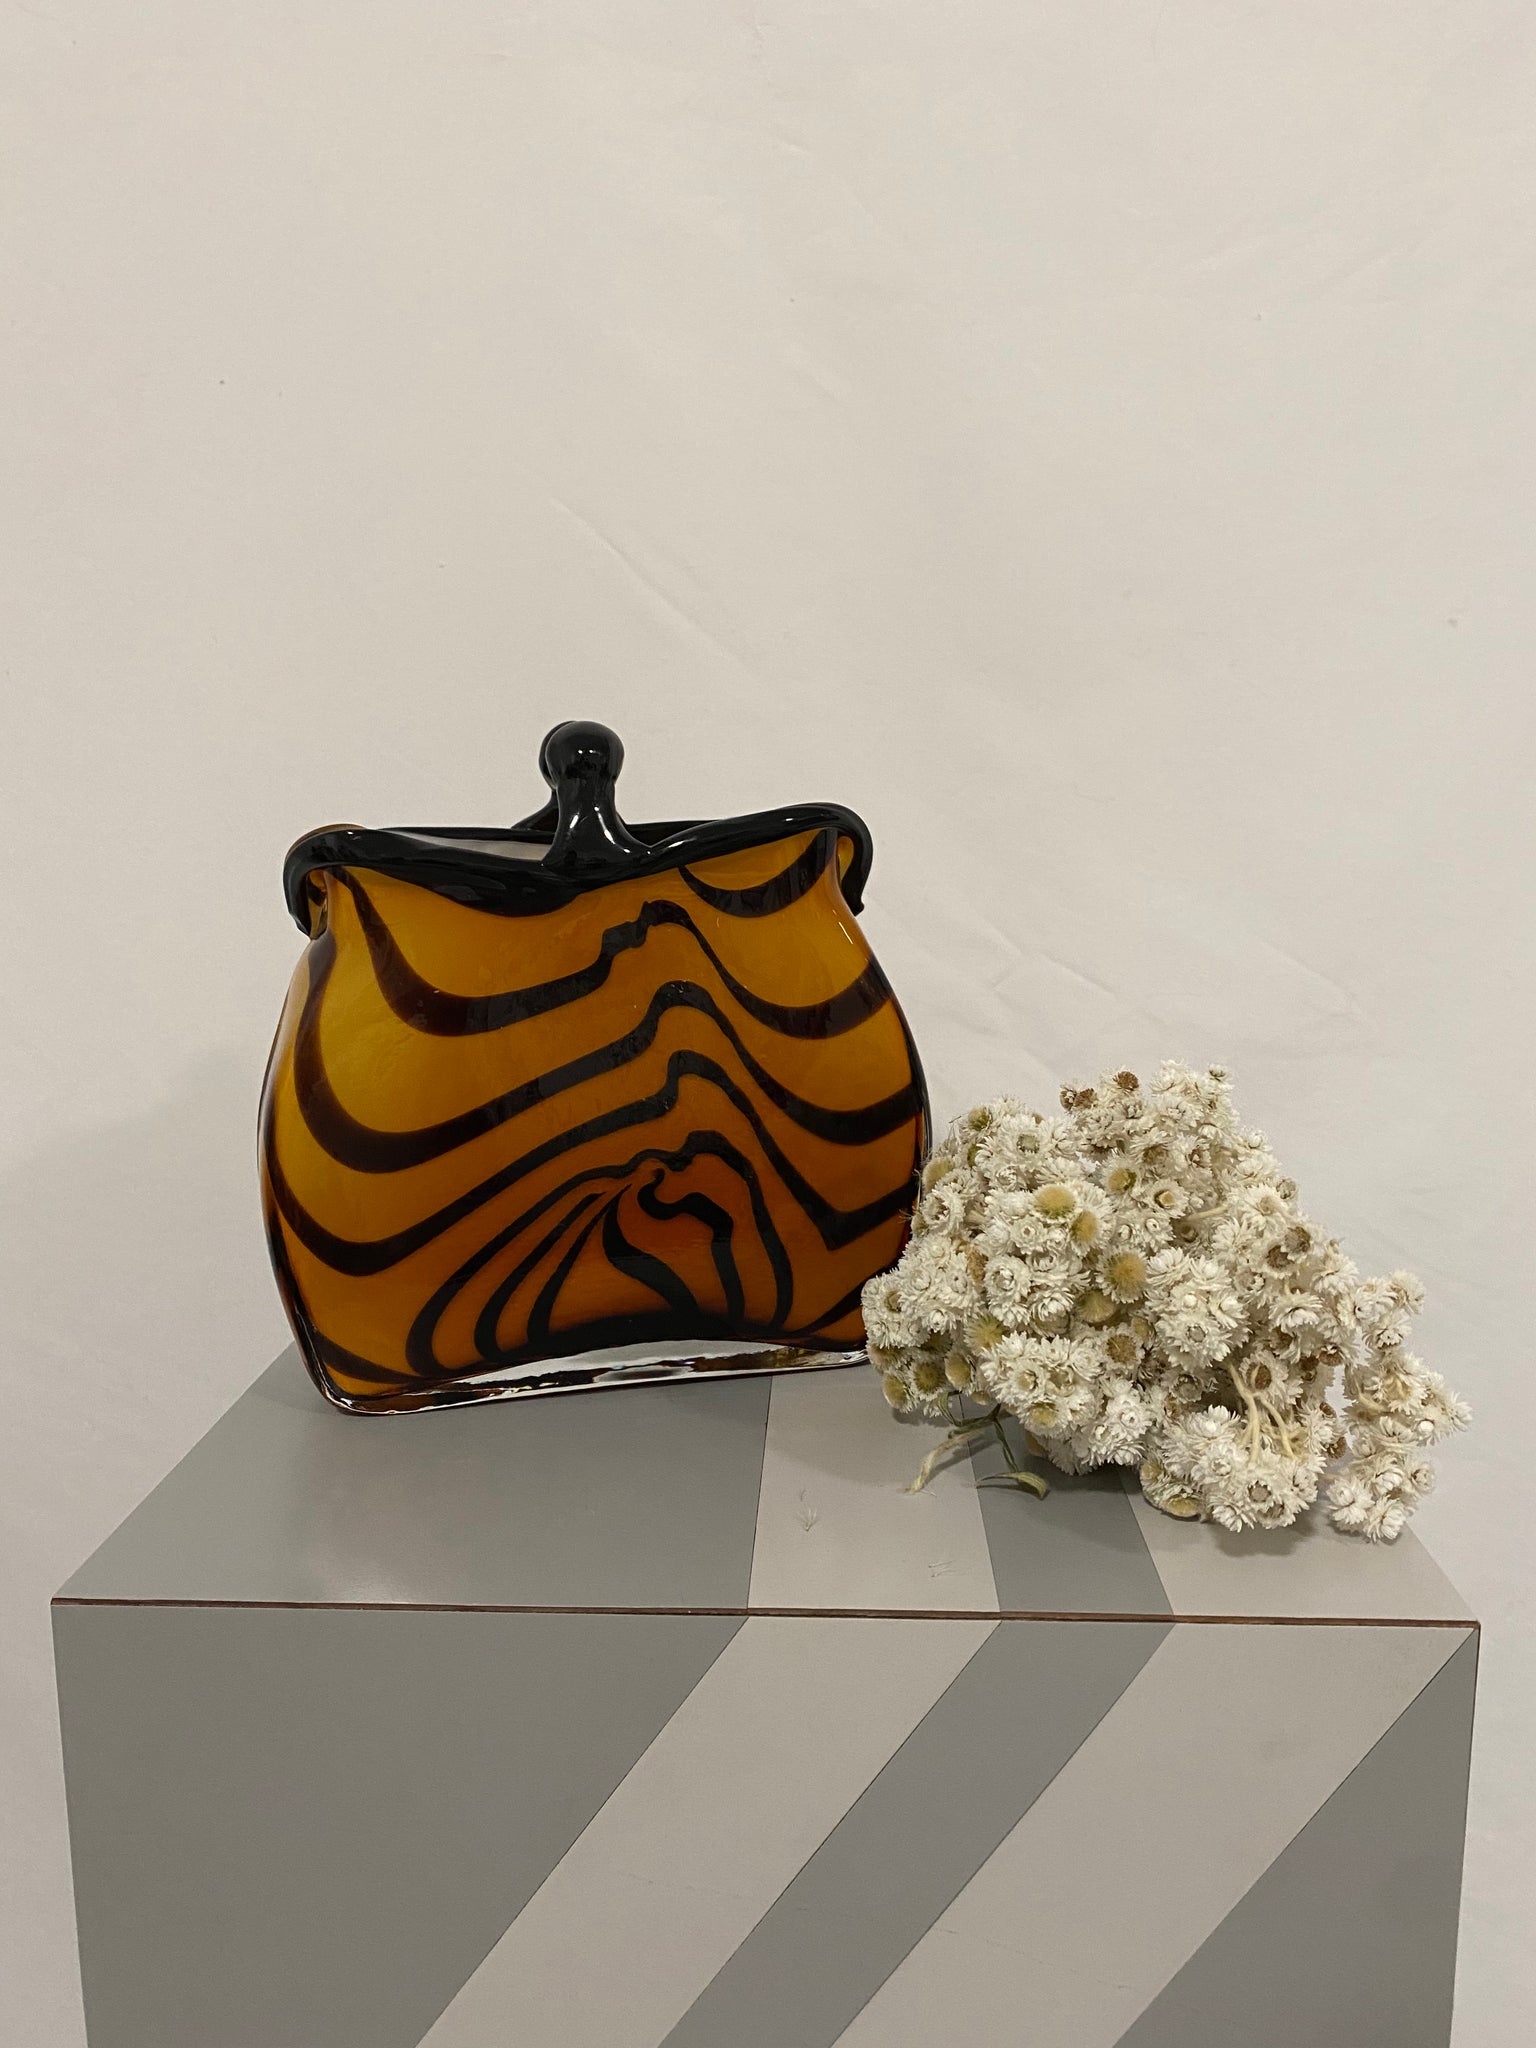 Murano style striped glass purse vase